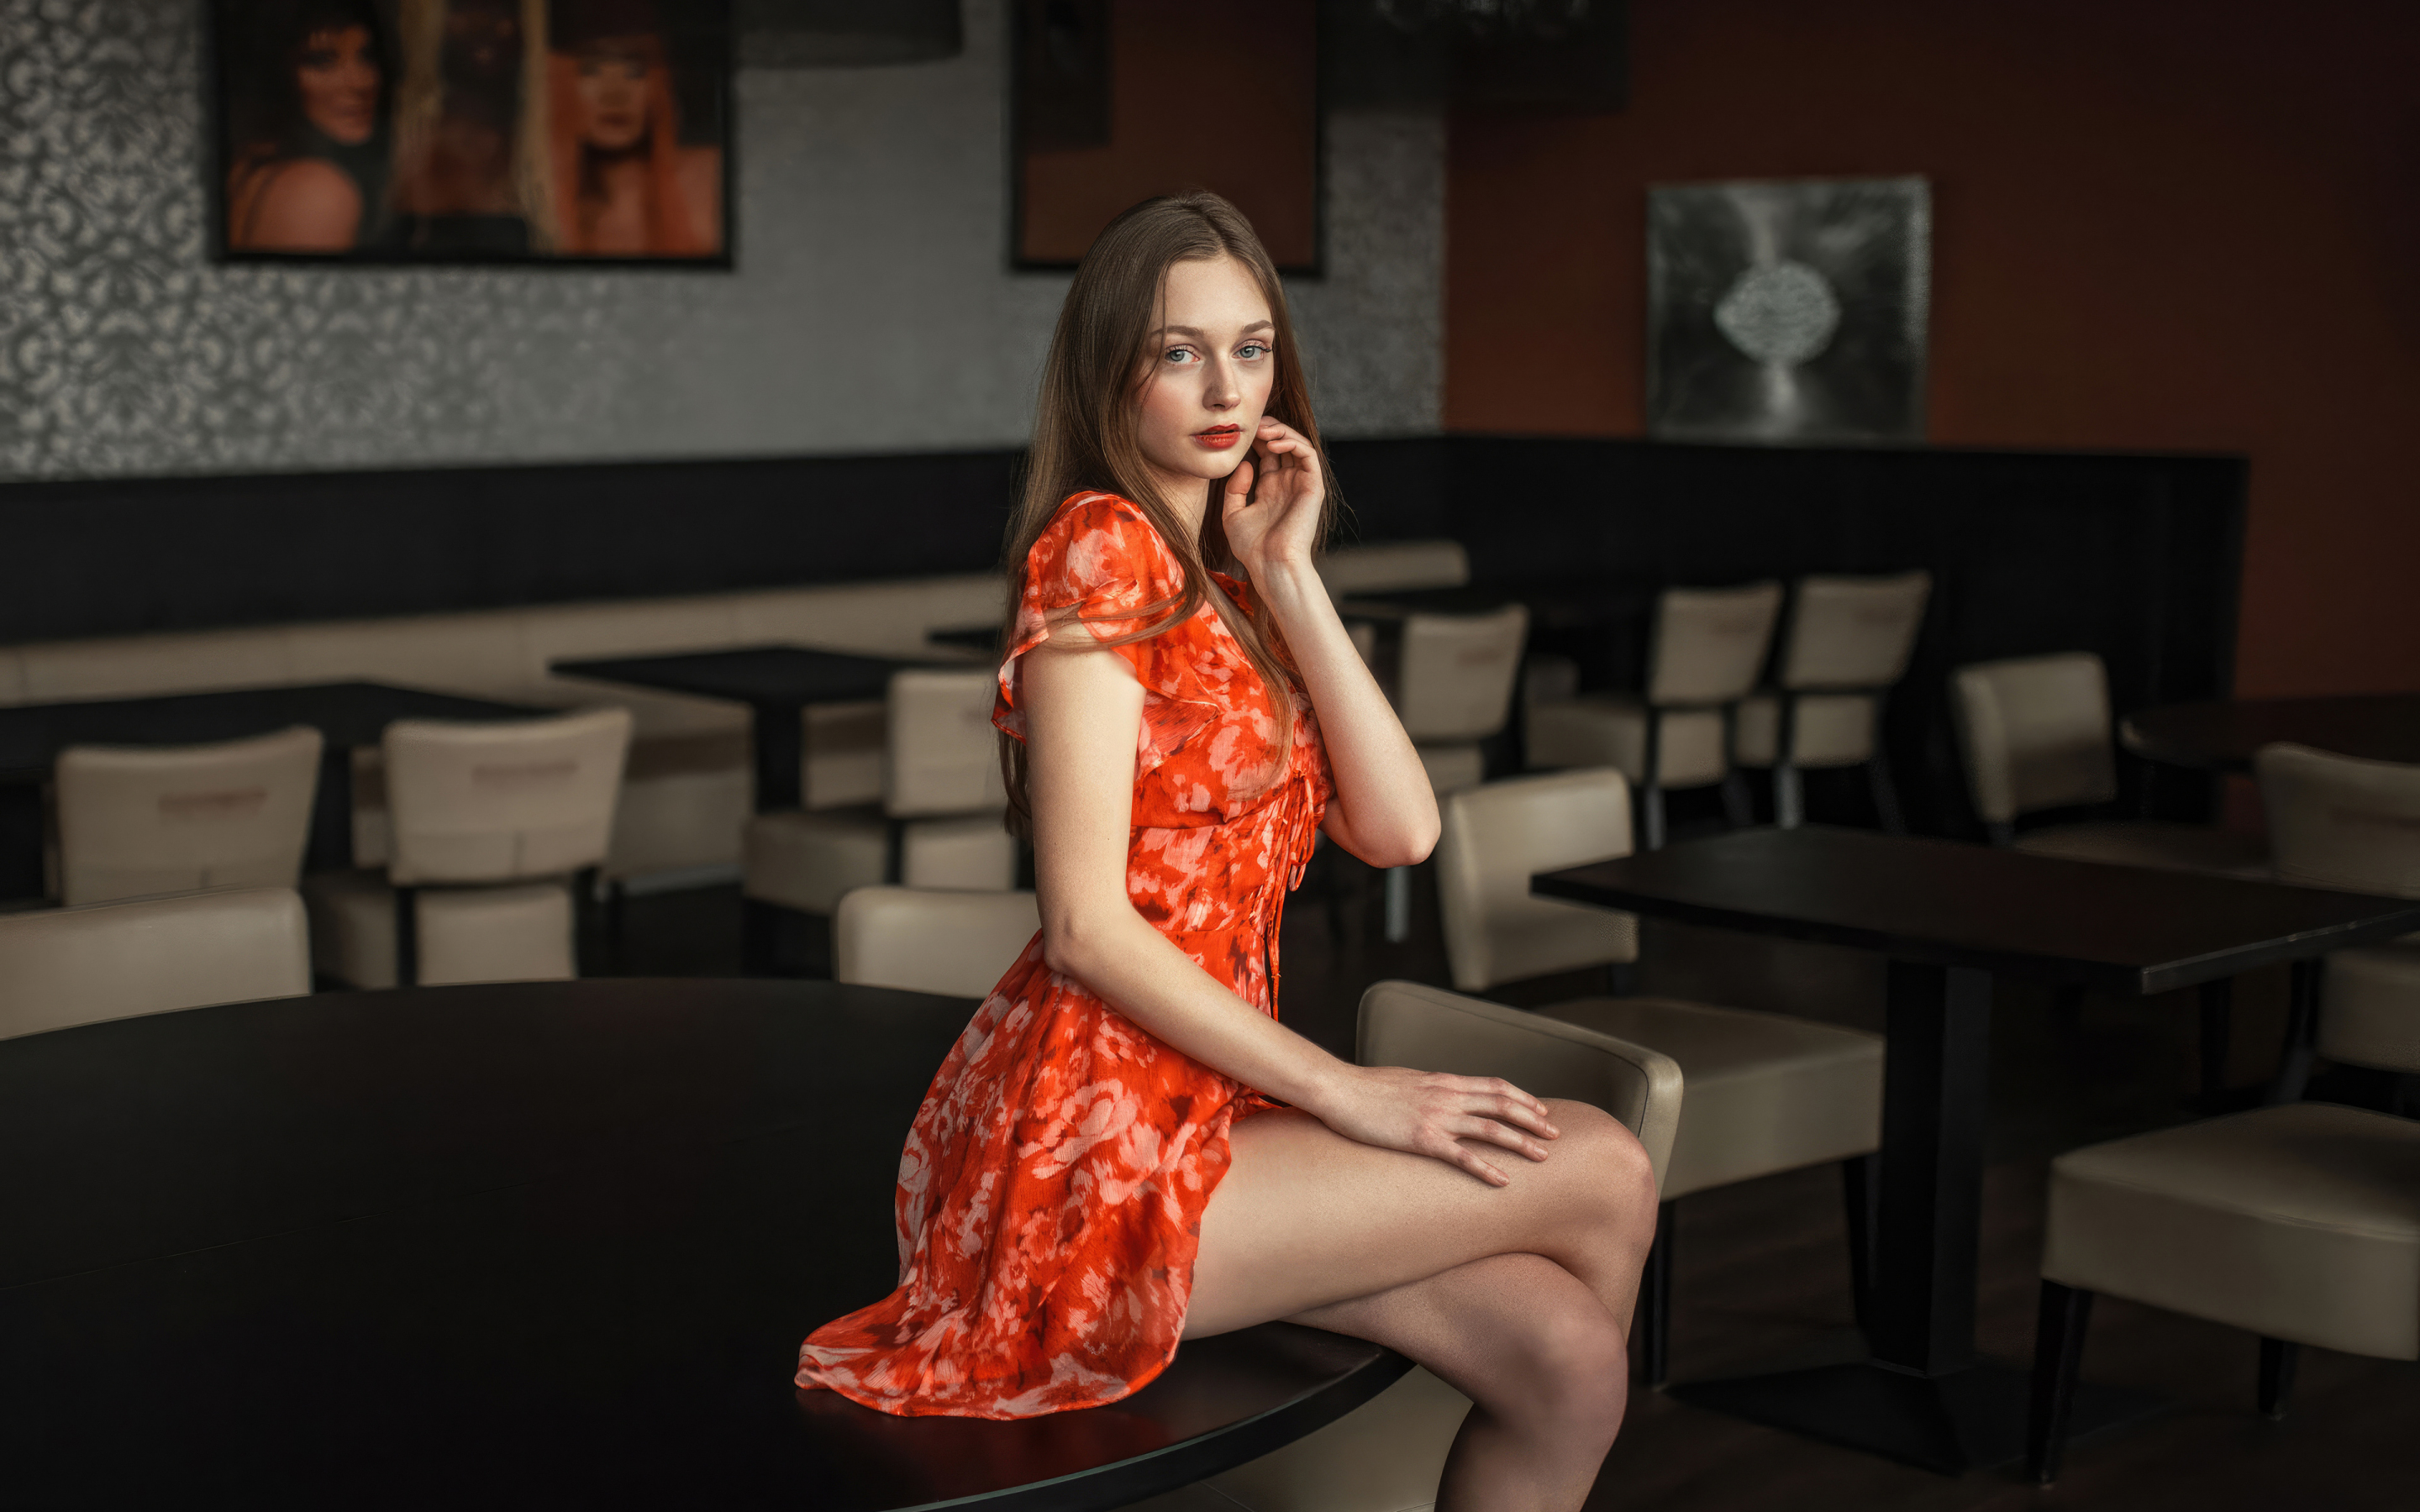 Brunette, orange skirt, pretty girl, 2880x1800 wallpaper